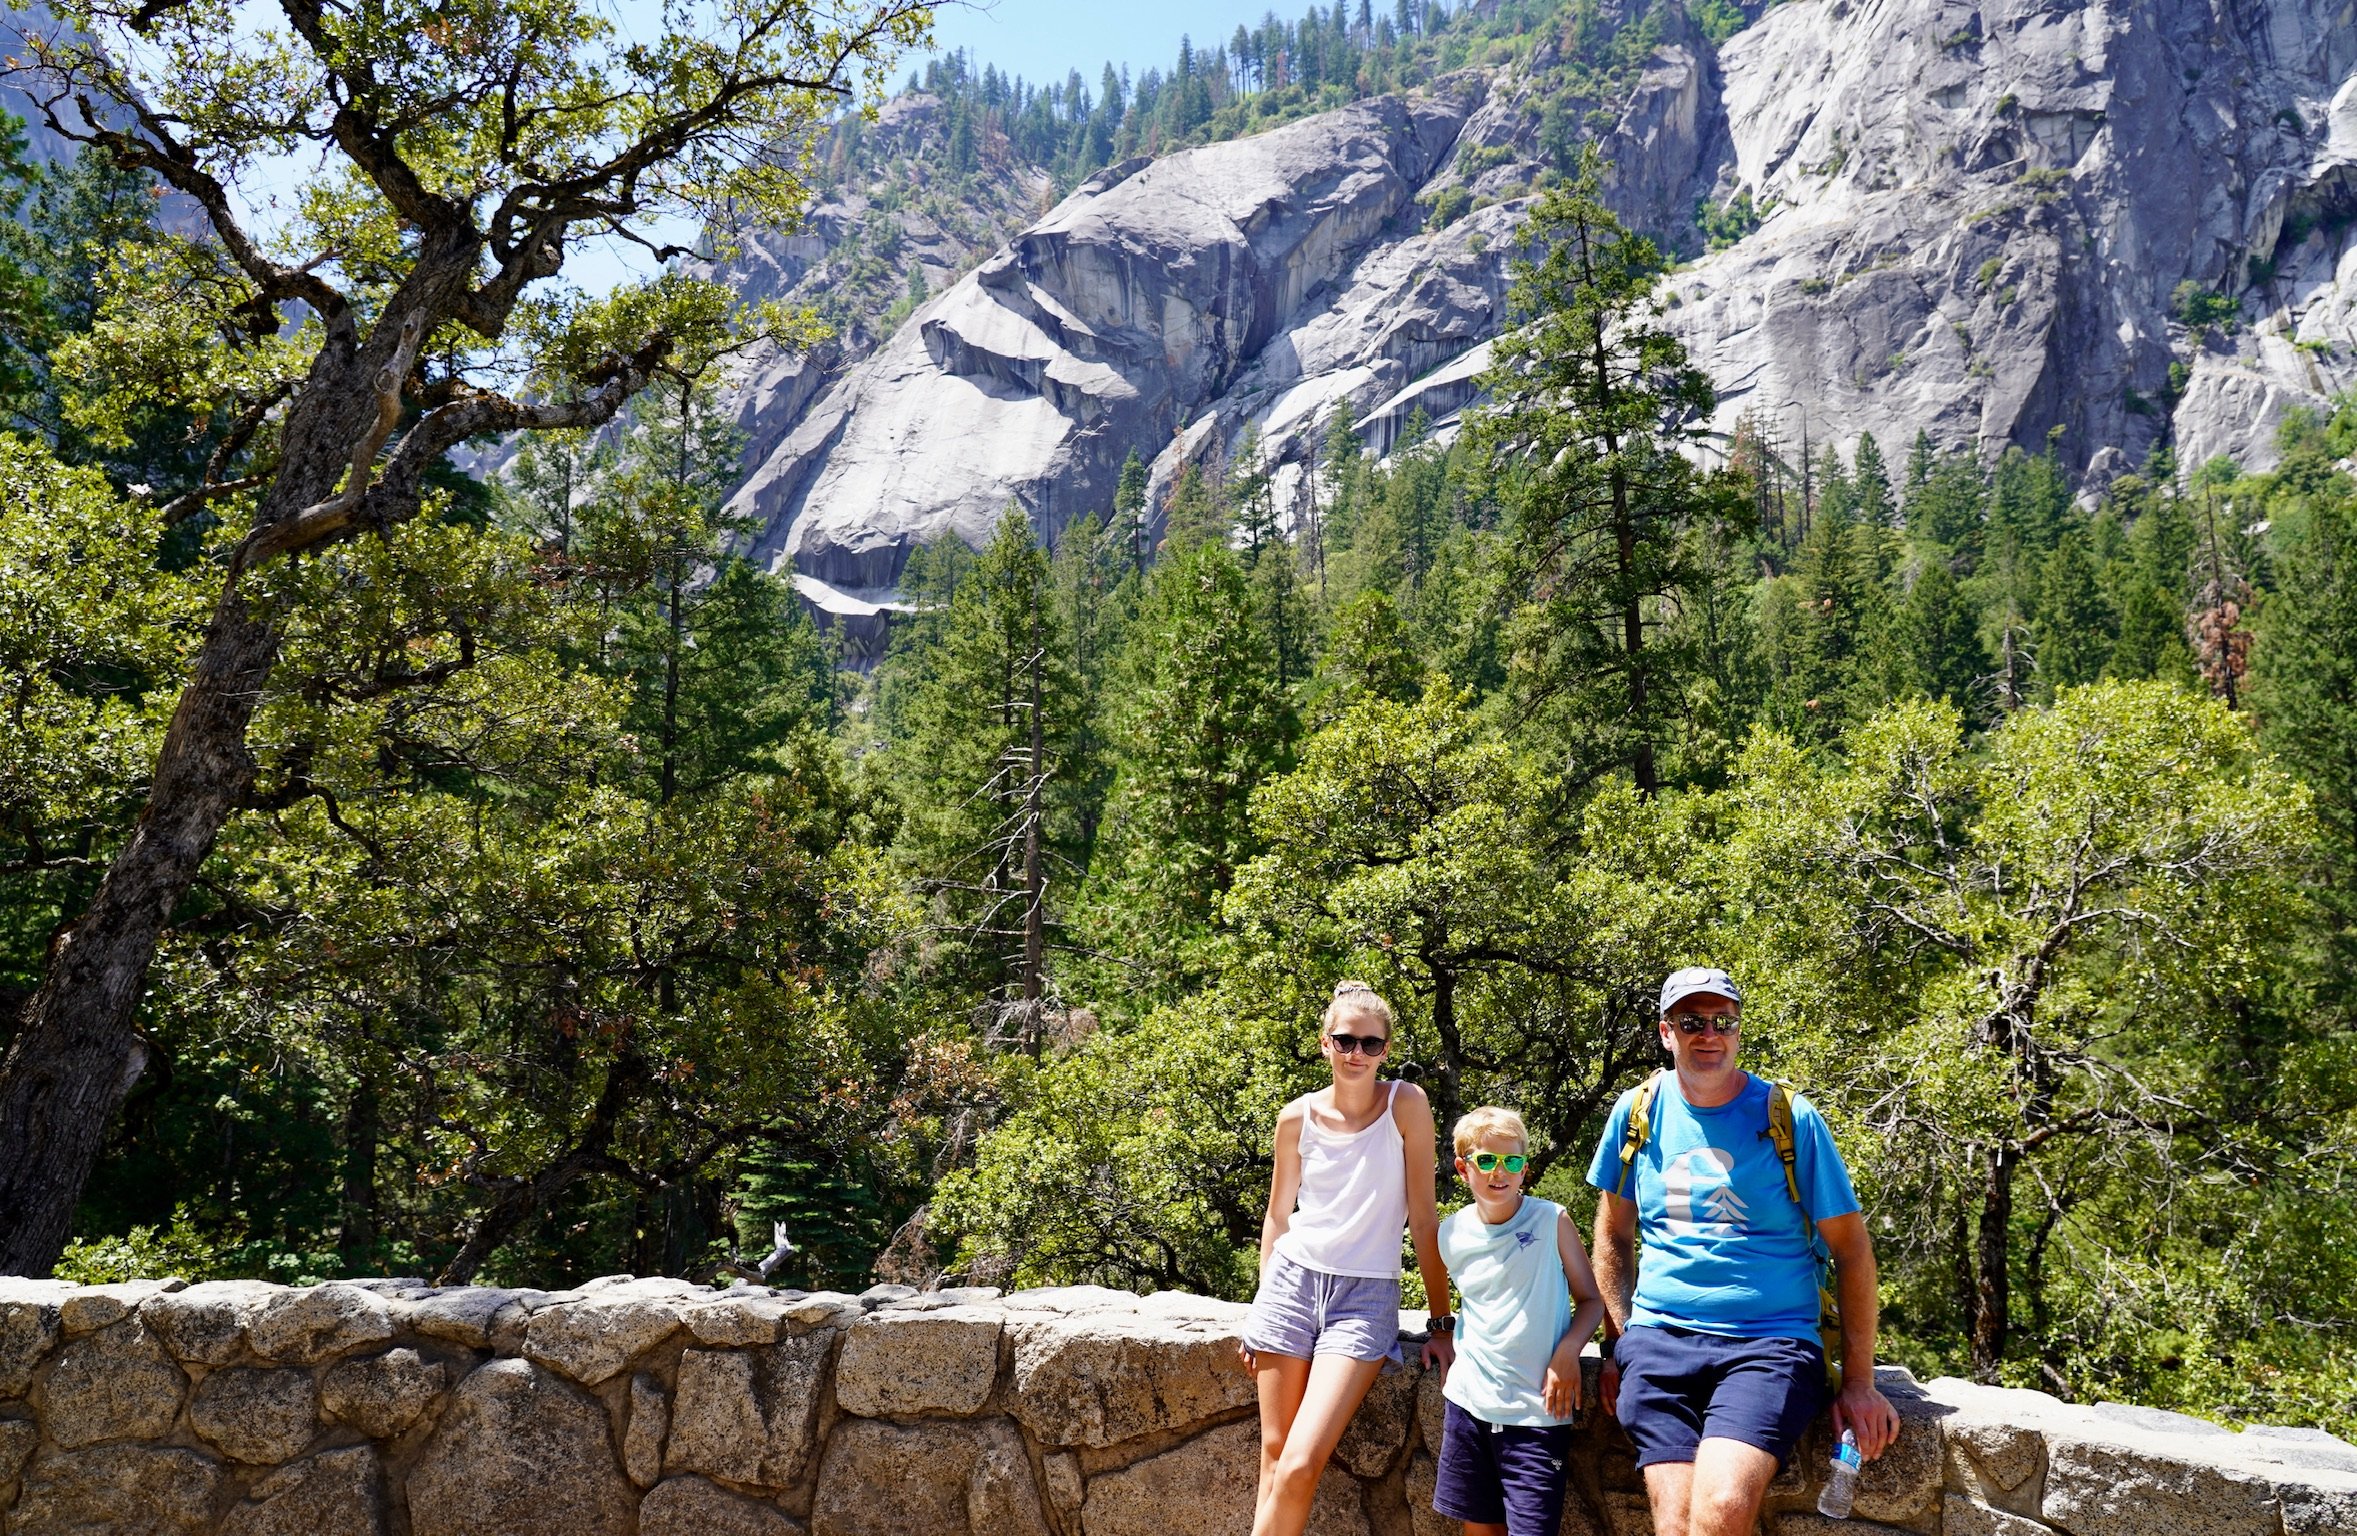 USA Reise mit Kindern Erfahrungen und Tipps - USA Nationalparks mit Kindern - Yosemite Nationalpark